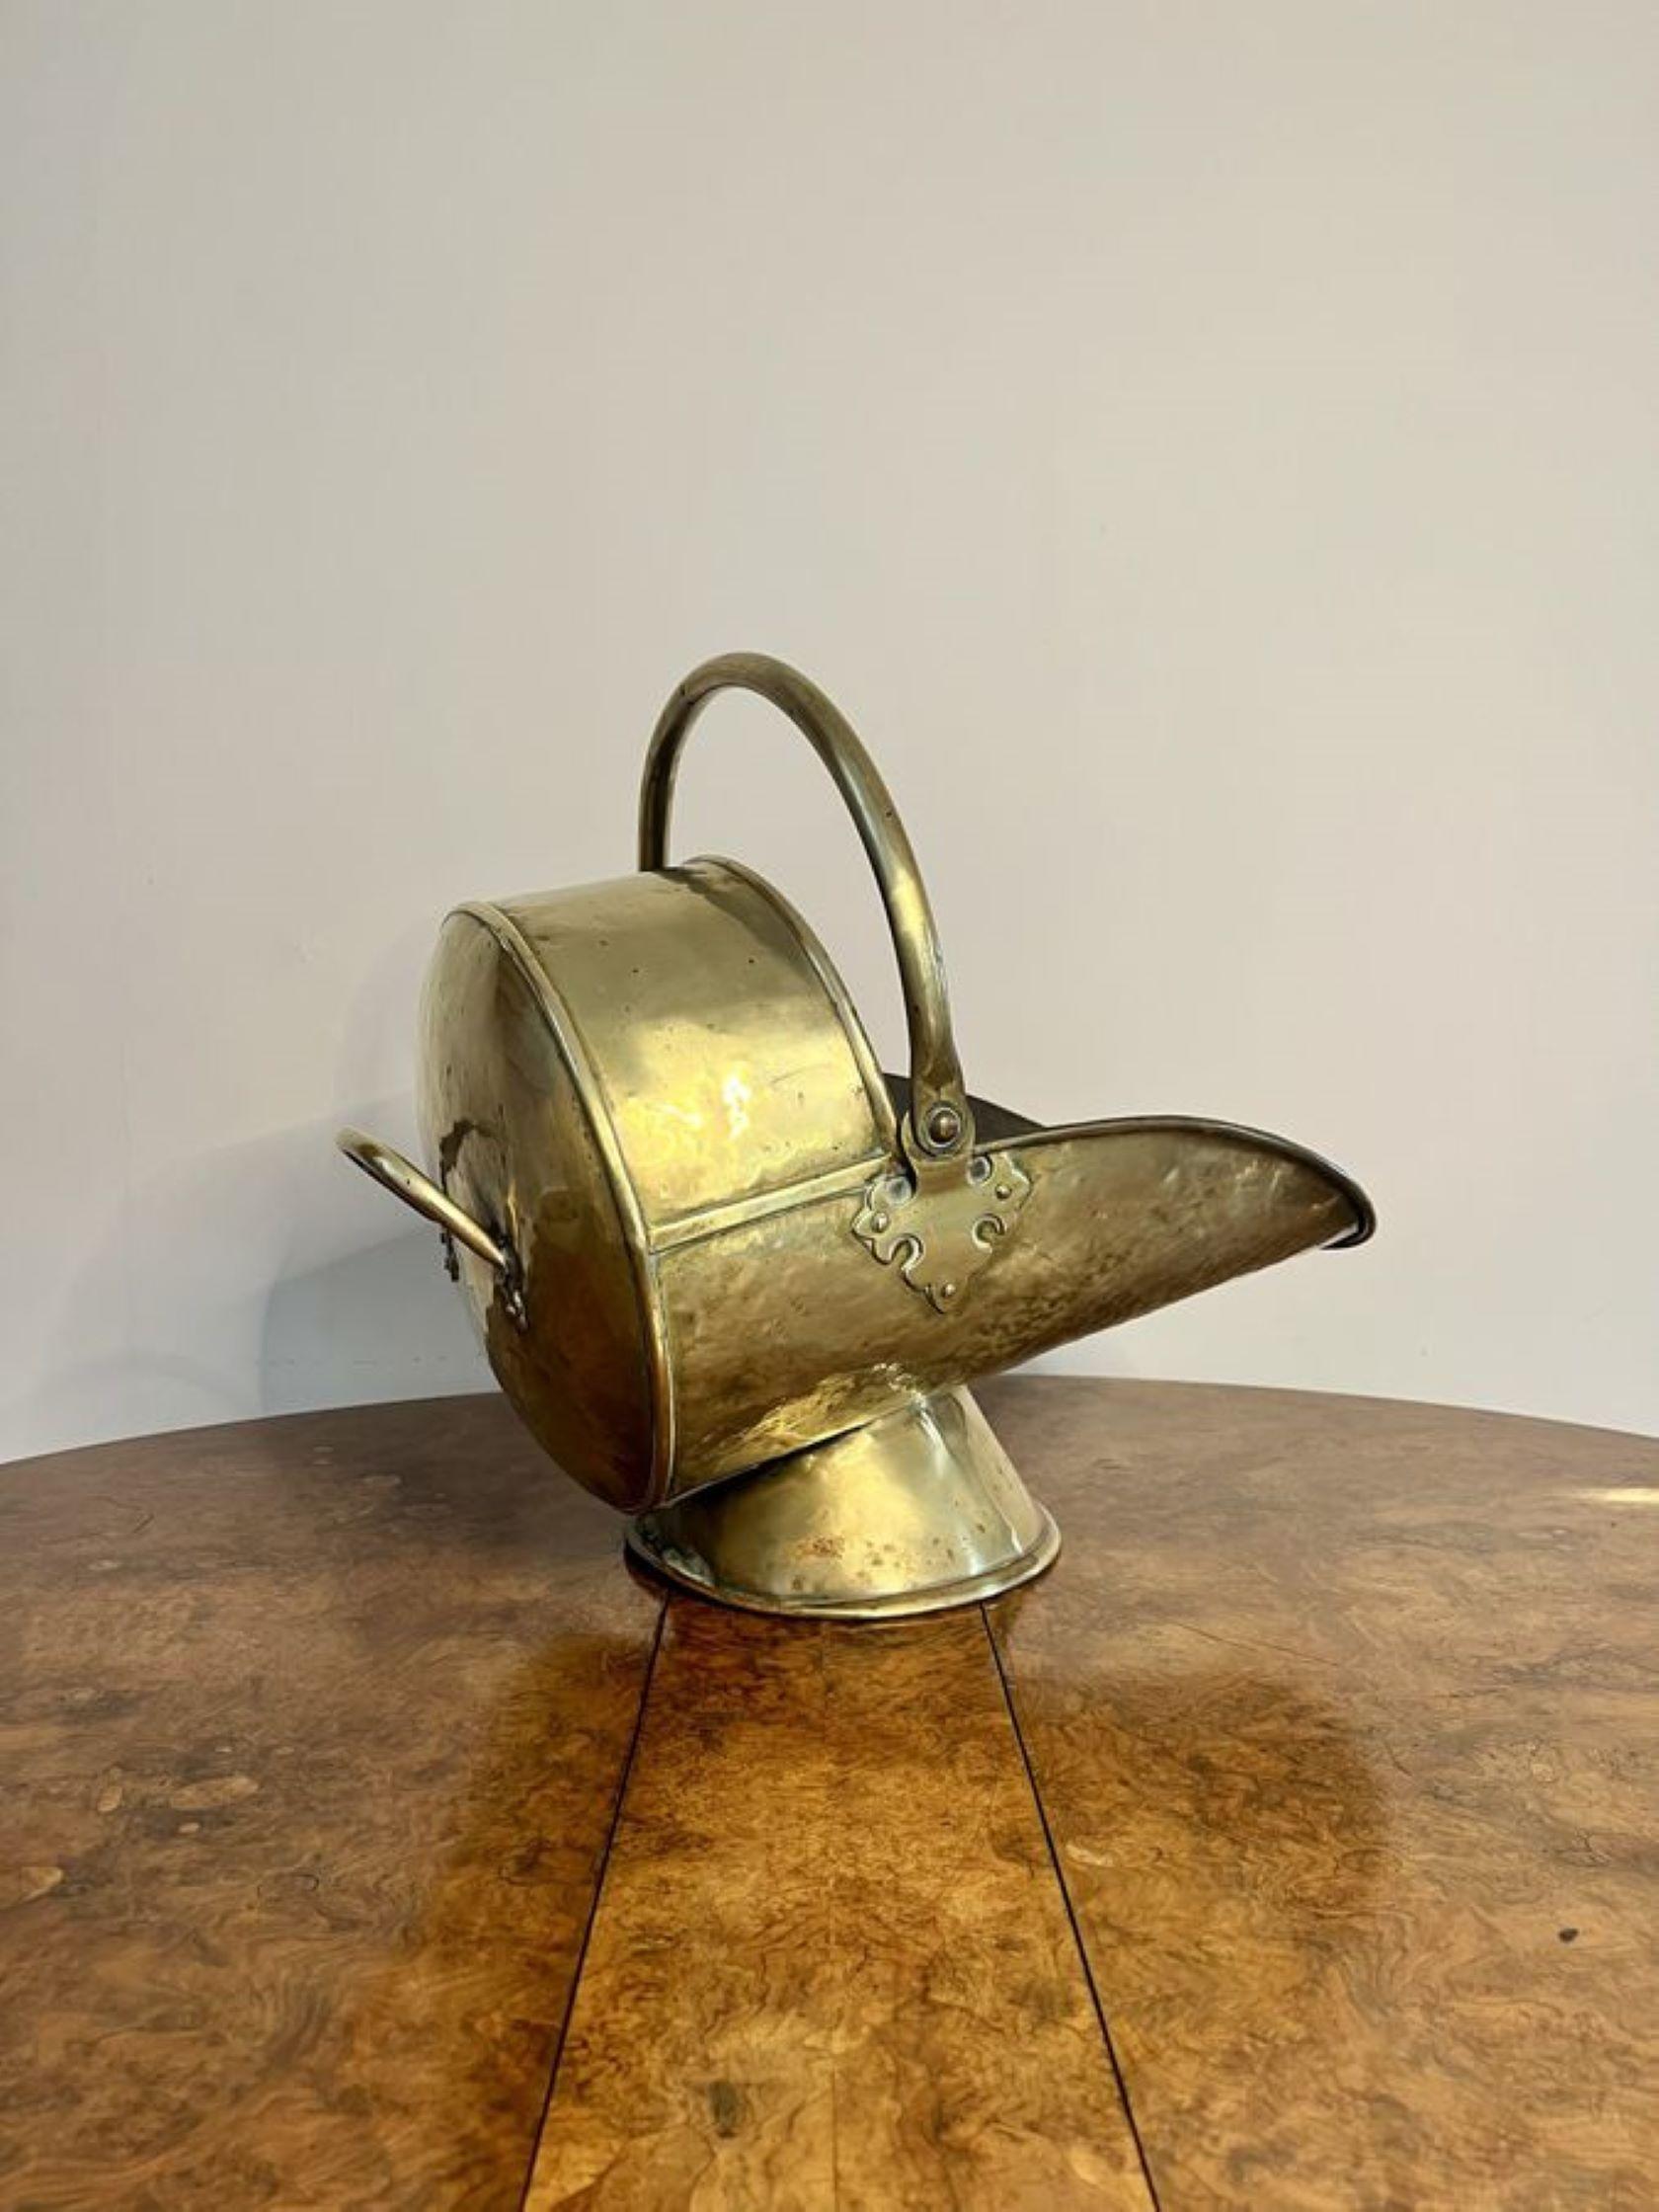 Wunderschöne antike viktorianische Messingkohlekübel und Schaufel mit einem hochwertigen Messingkohlekübel mit einem Schwenkgriff an der Oberseite, einem Tragegriff an der Rückseite, der auf einer runden Basis steht. 

D. 1880